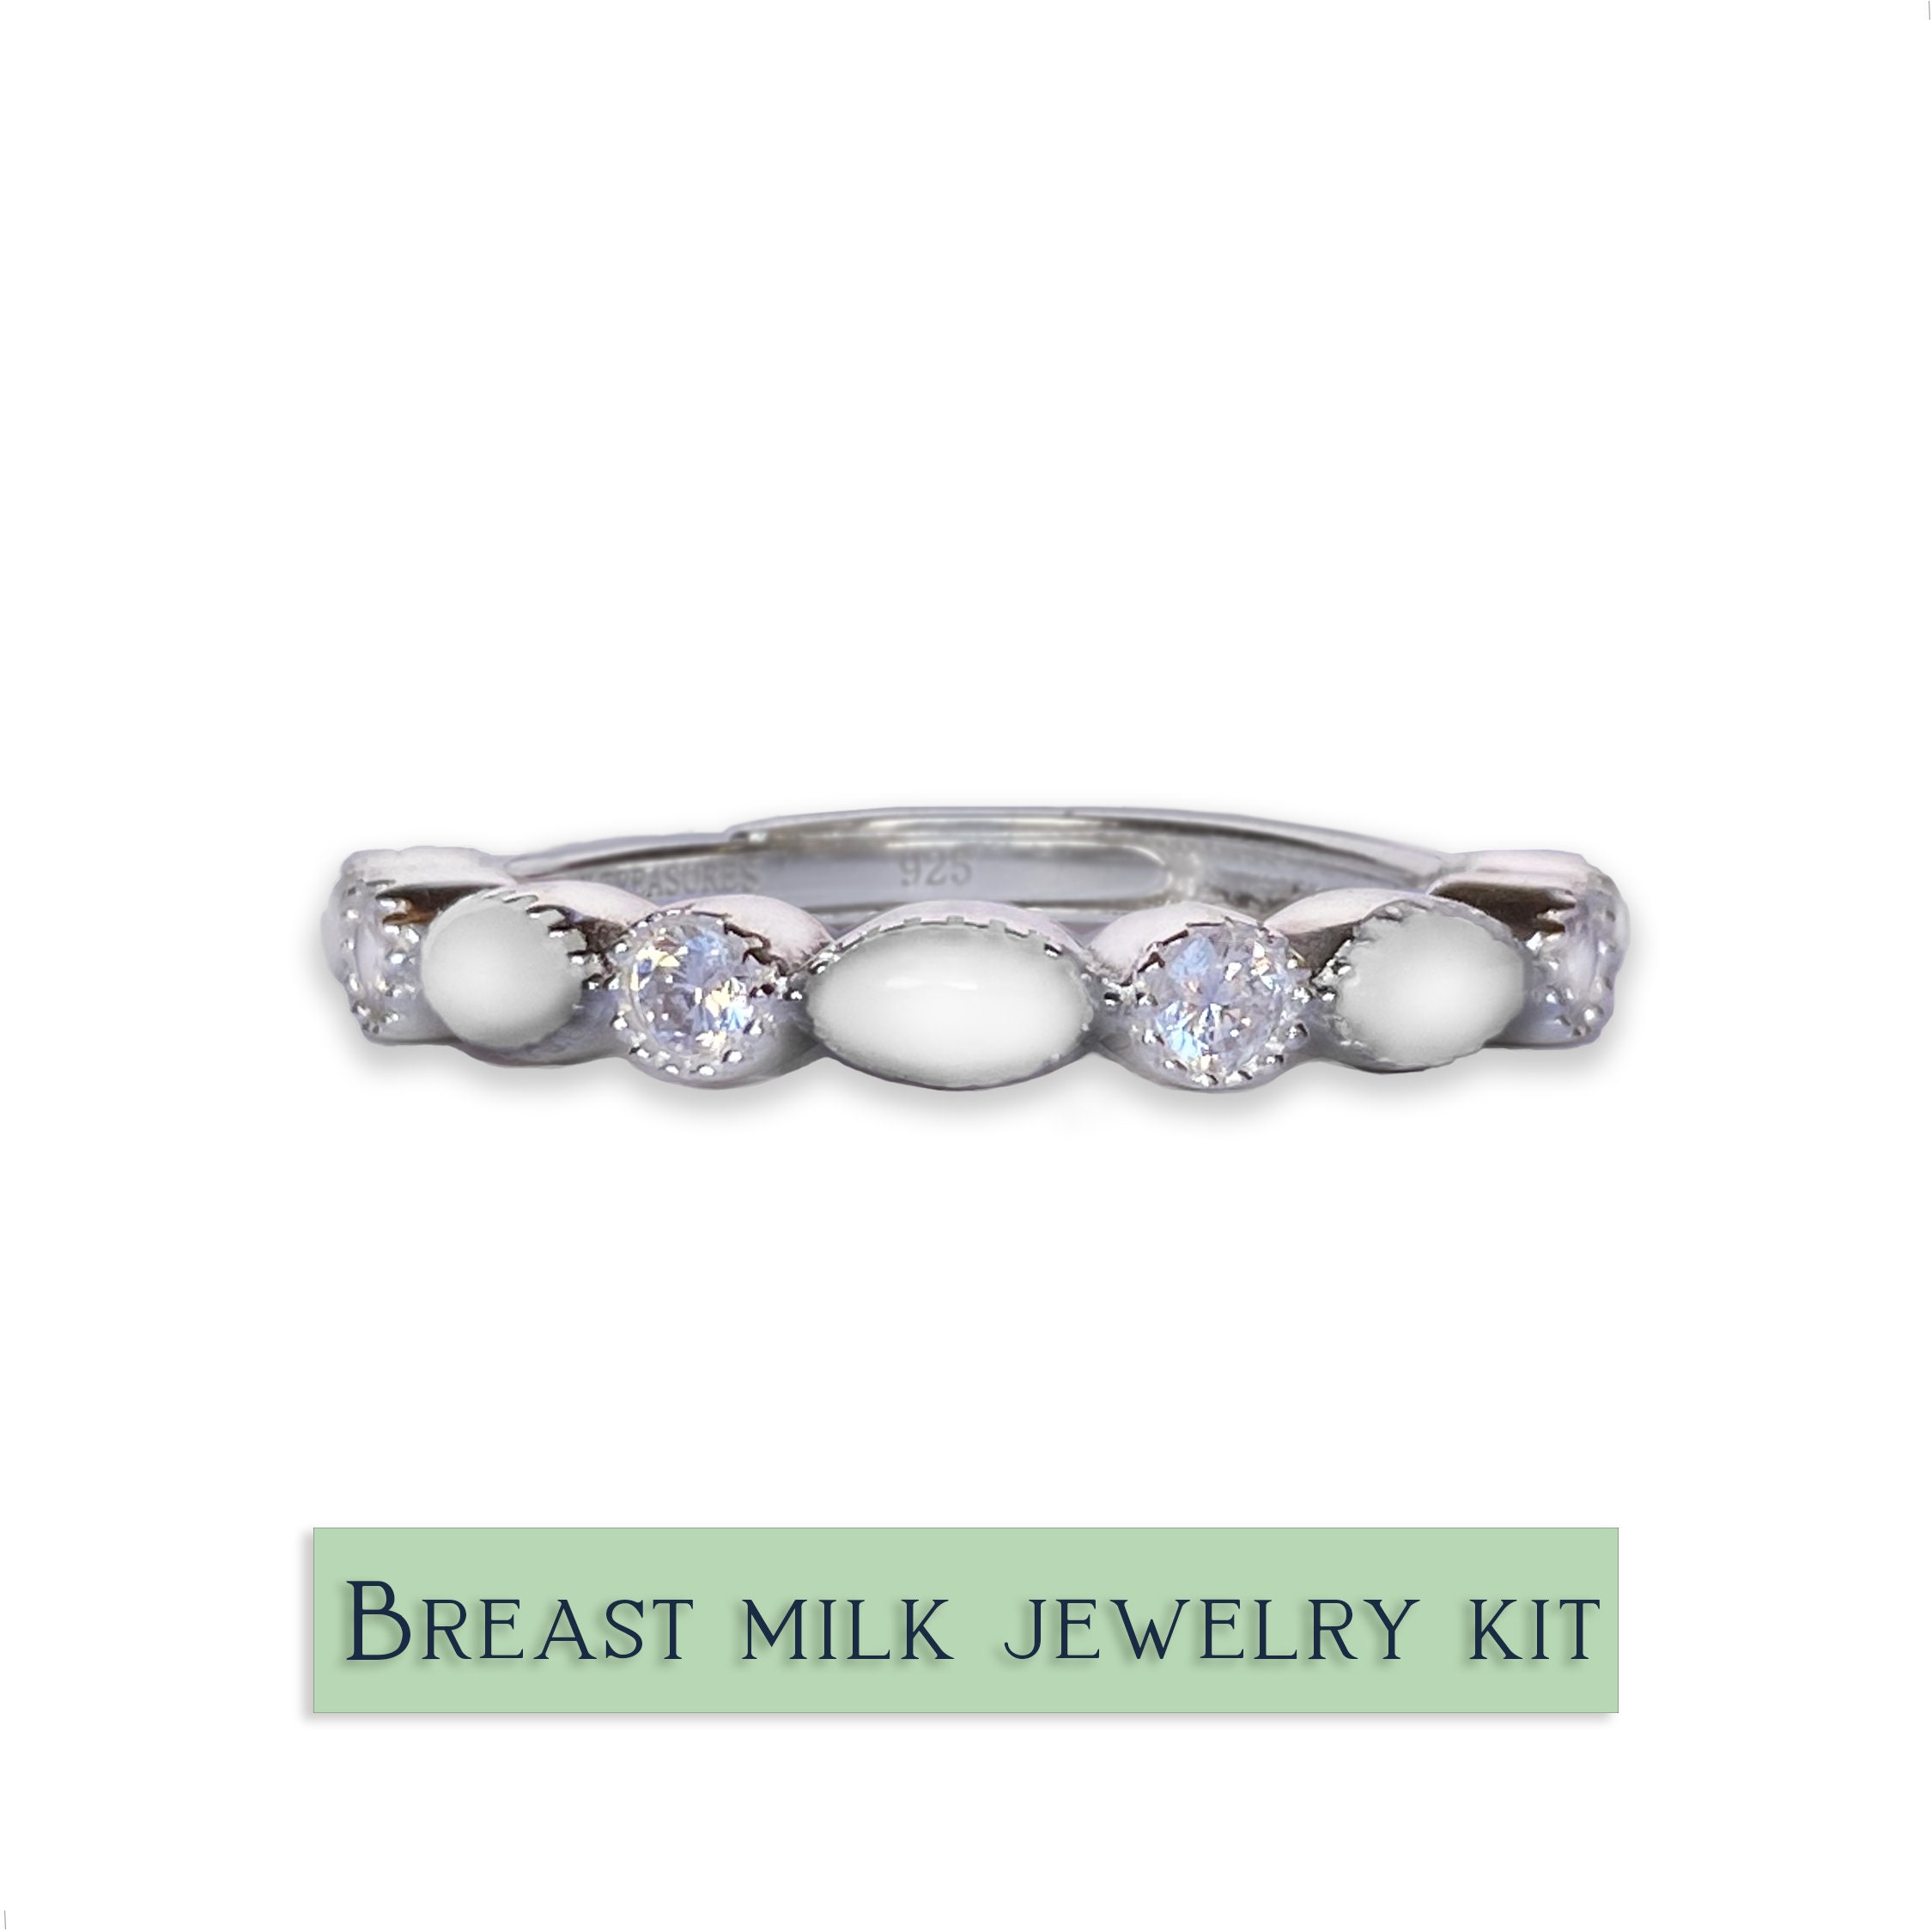 Breastmilk Jewelry Ring Diy, Breastmilk Jewelry DIY, Silver RING 925 White  Gold Plated, Breastmilk Kit, Keepsake Jewelry, Adjustable 